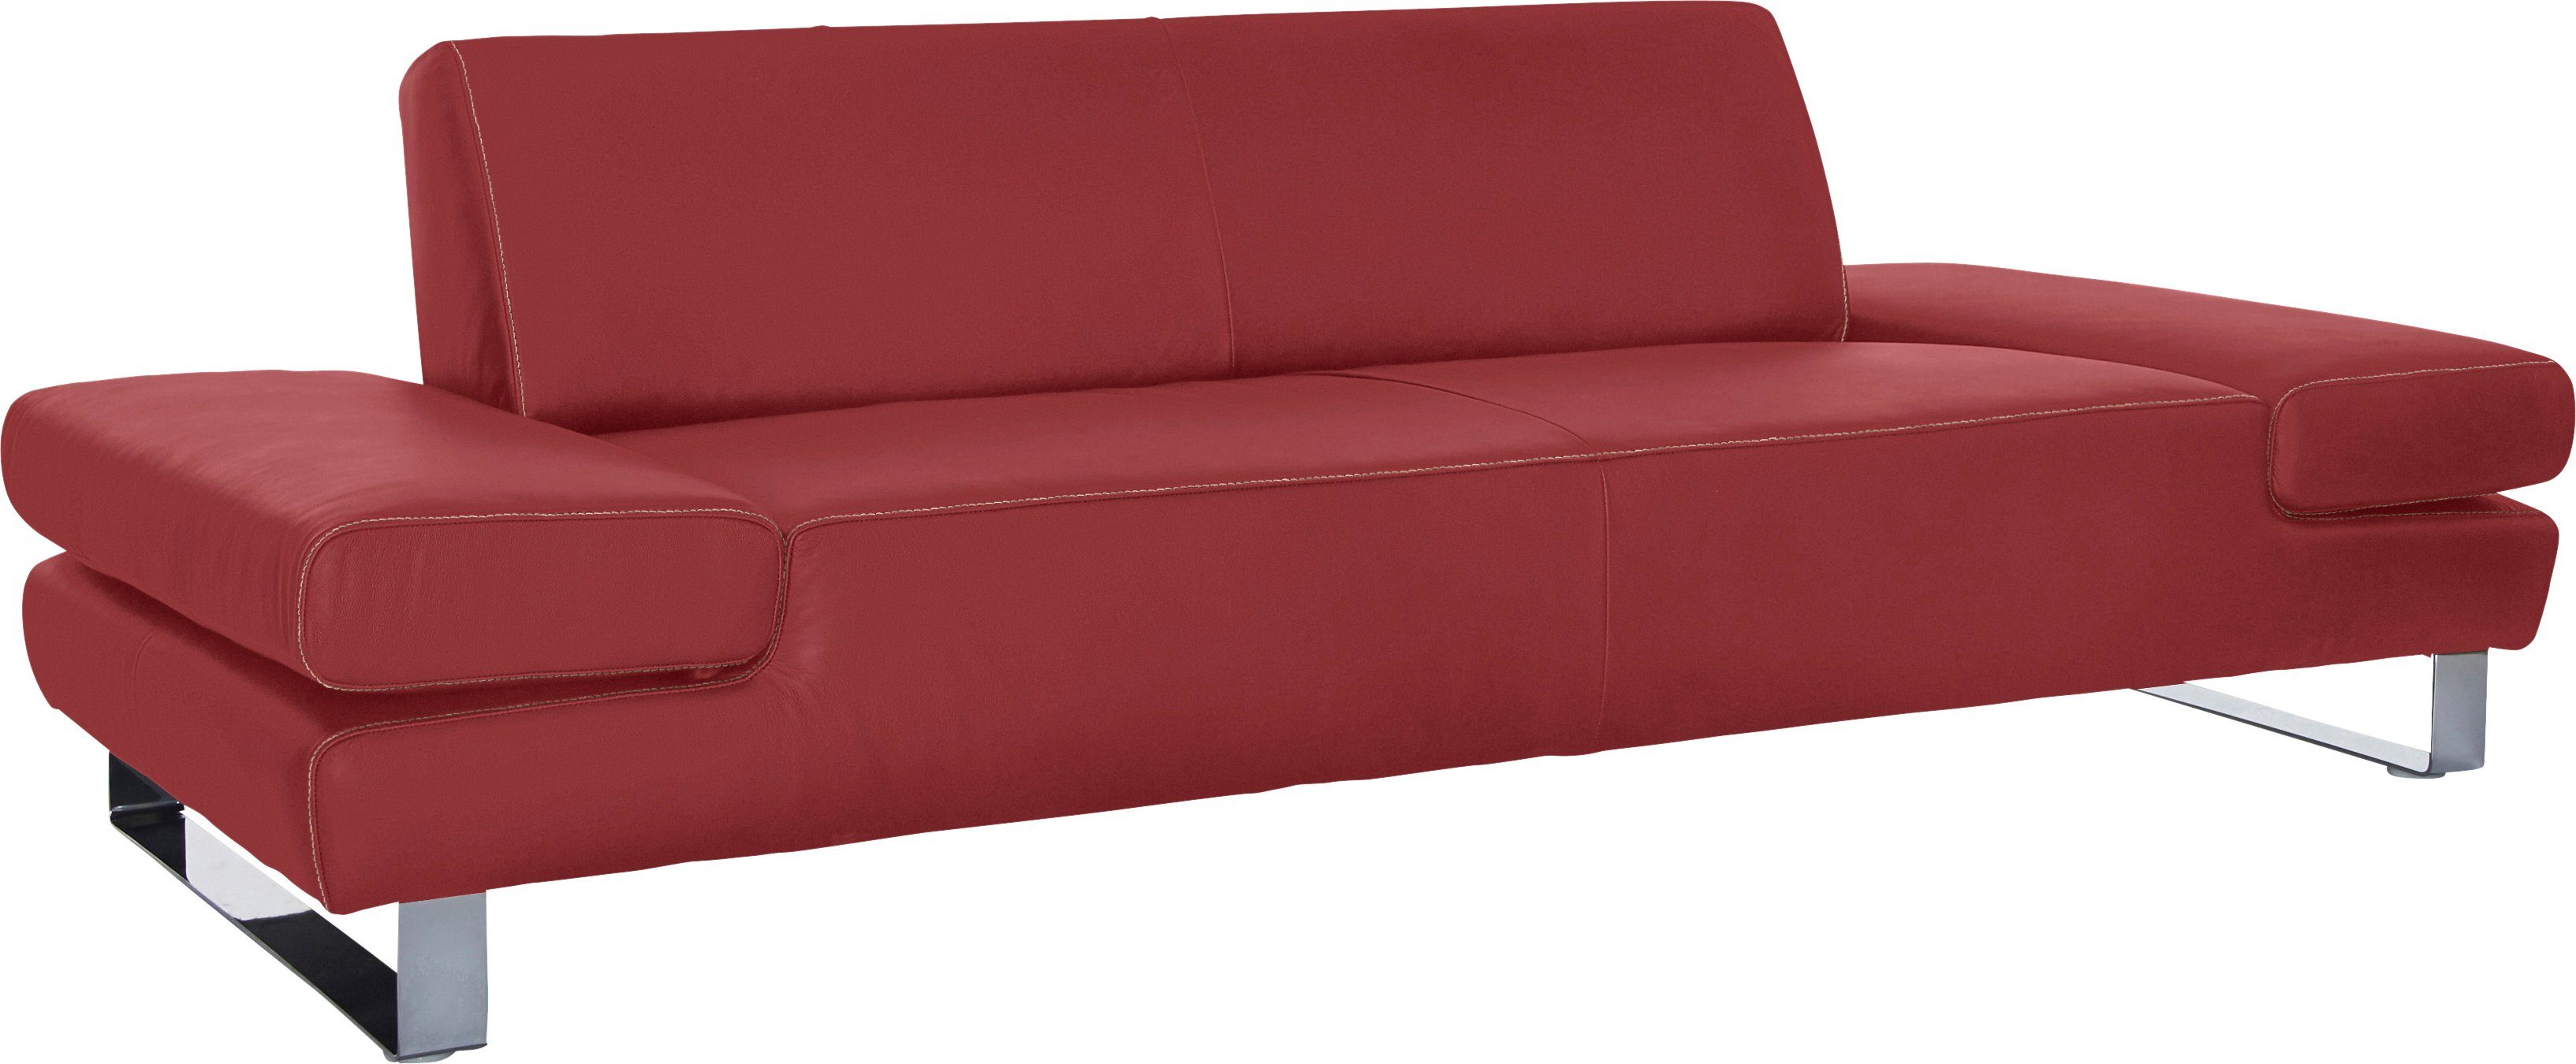 W.SCHILLIG 3-Sitzer Armlehnenverstellung, red mit inklusive Normaltiefe, taboo, Kontrastnaht mit Z59 ruby